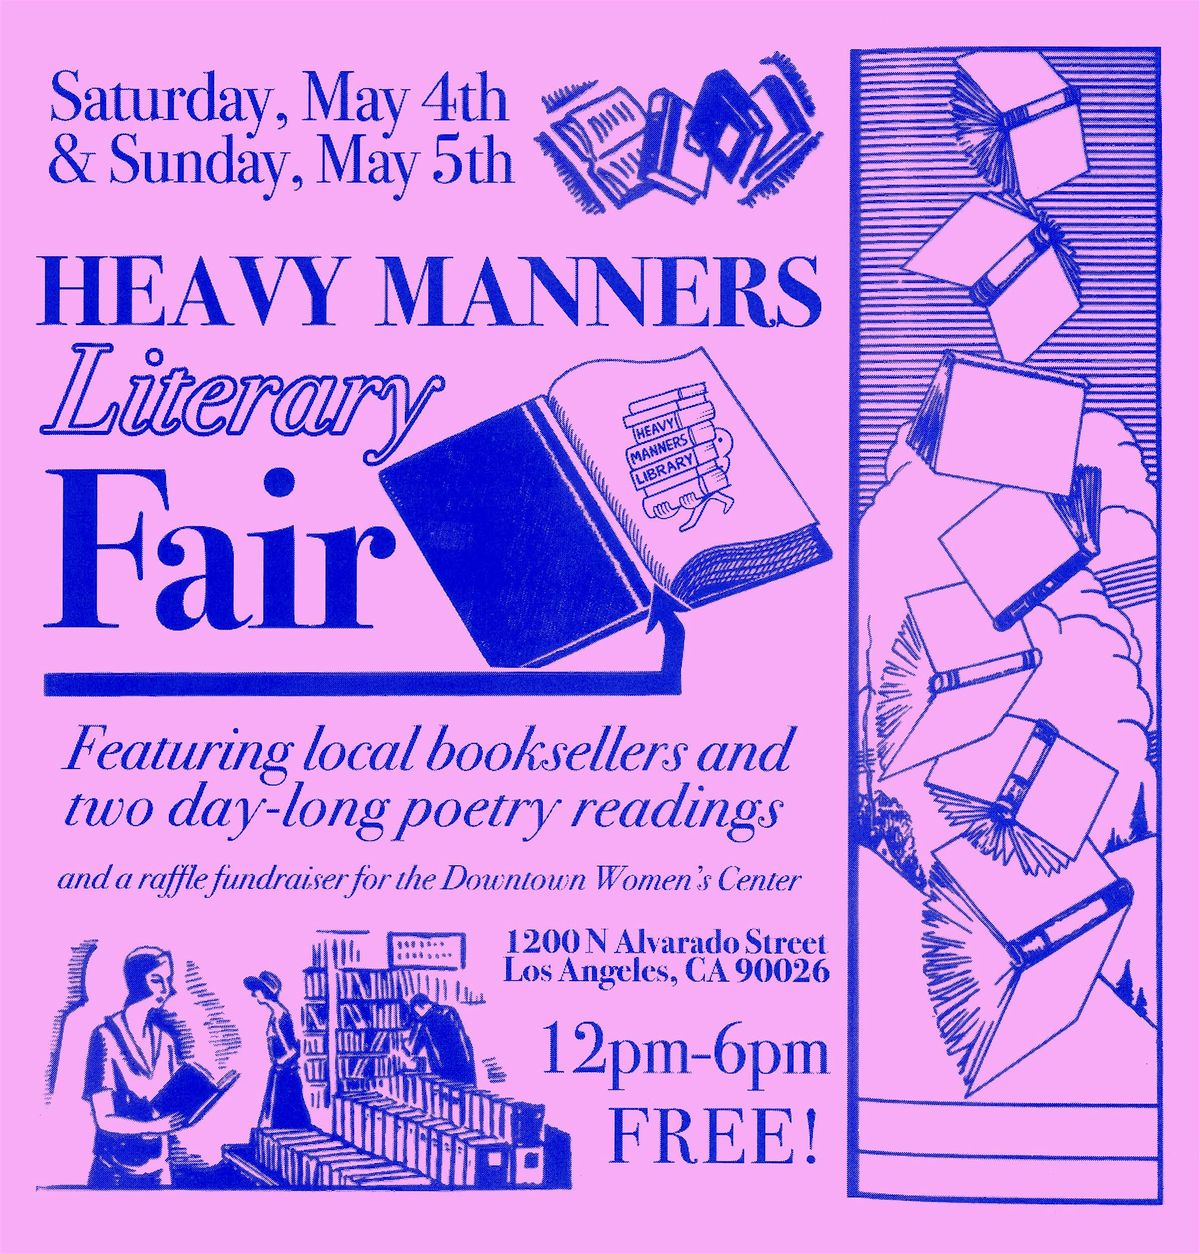 Heavy Manners Literary Fair (5\/4 + 5\/5)